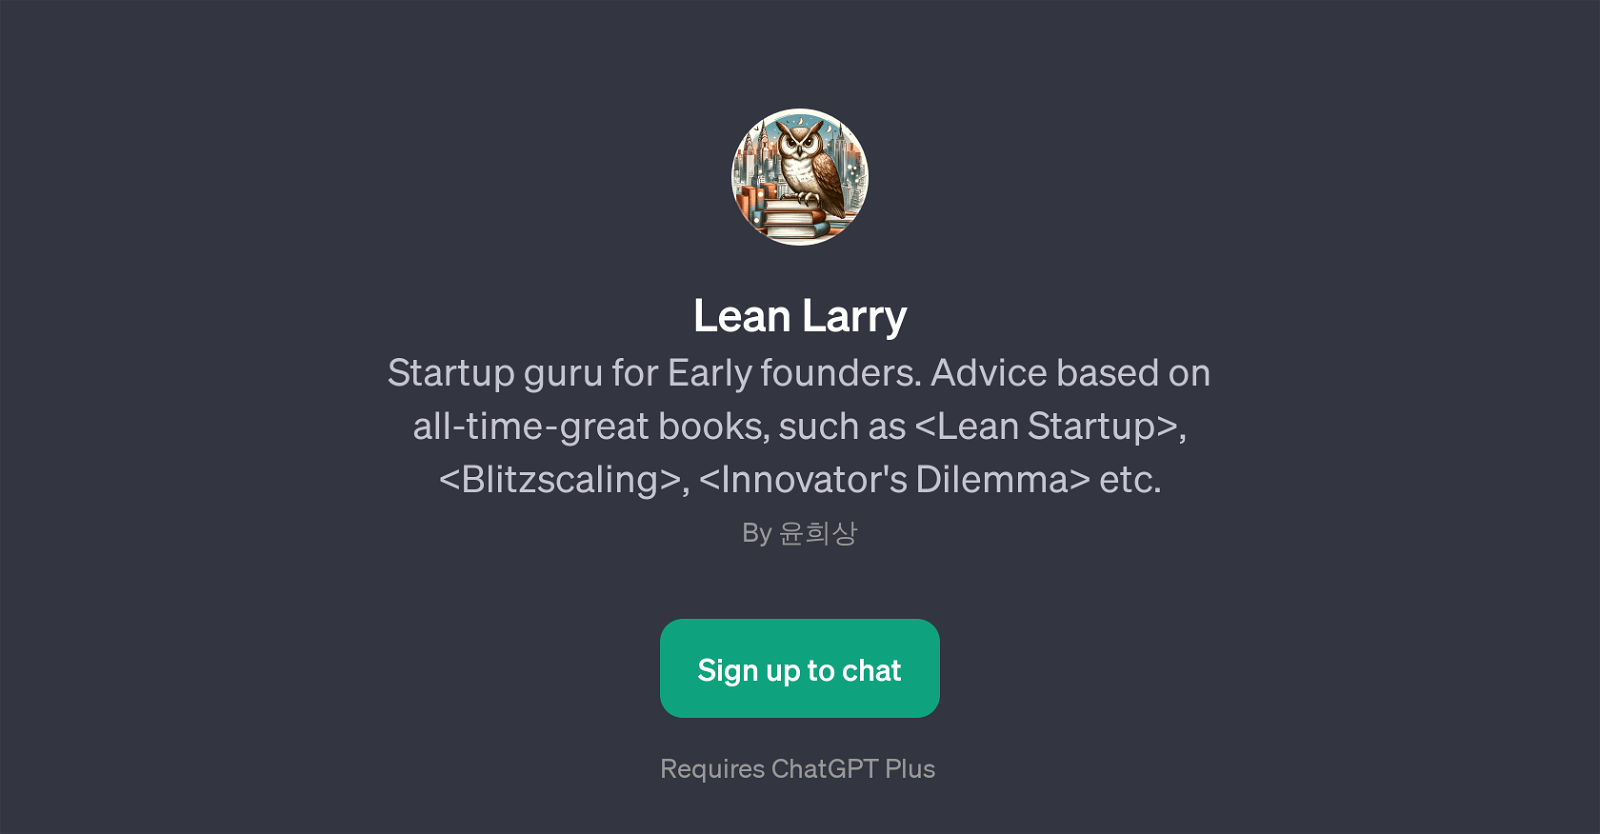 Lean Larry website